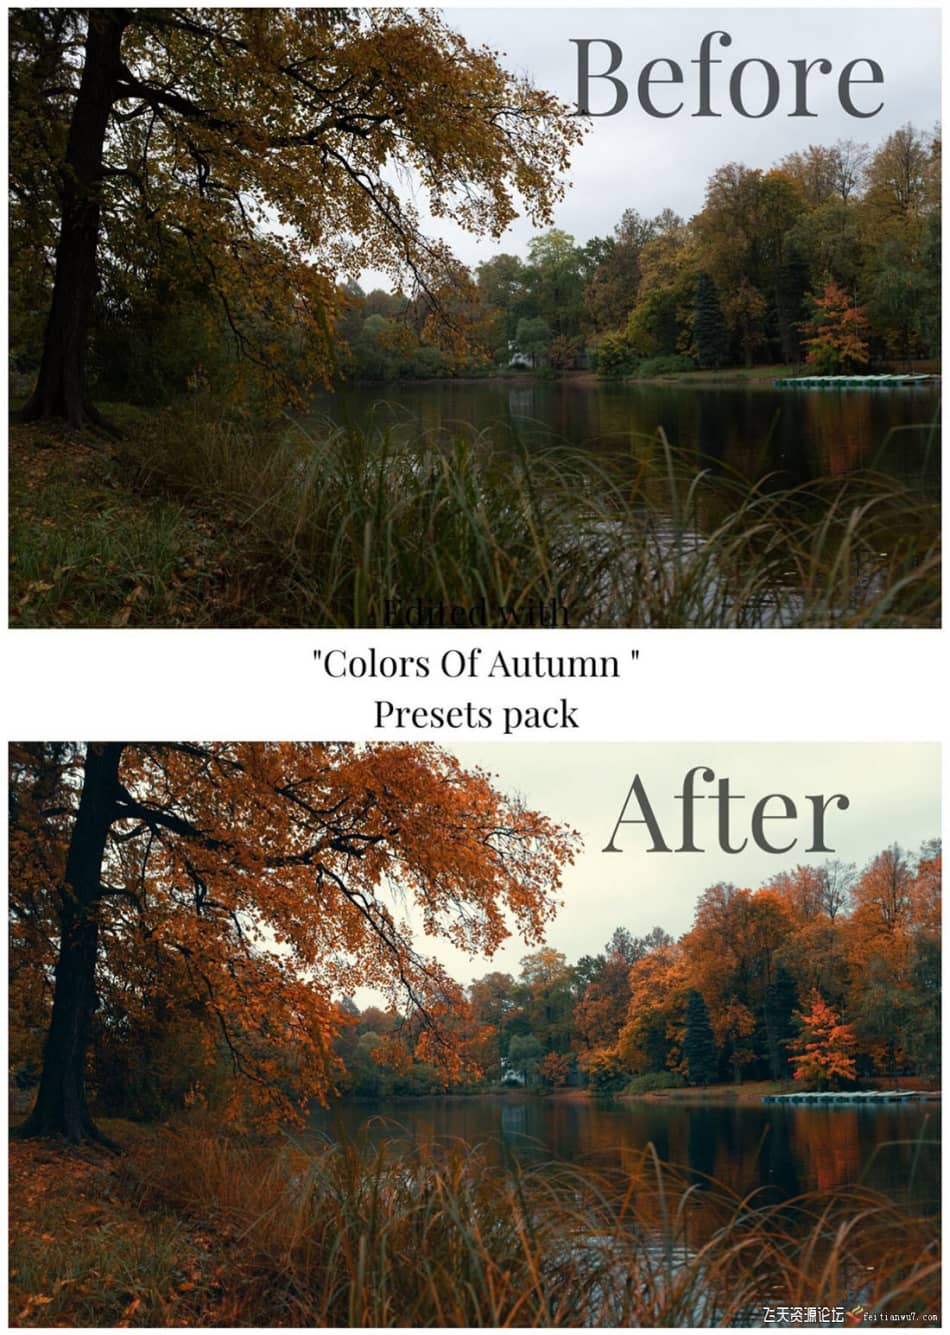 [旅拍LR预设] 街头摄影师 Viktor Balaguer 秋天的色彩Lightroom预设 Colors Of Autumn LR预设 第6张